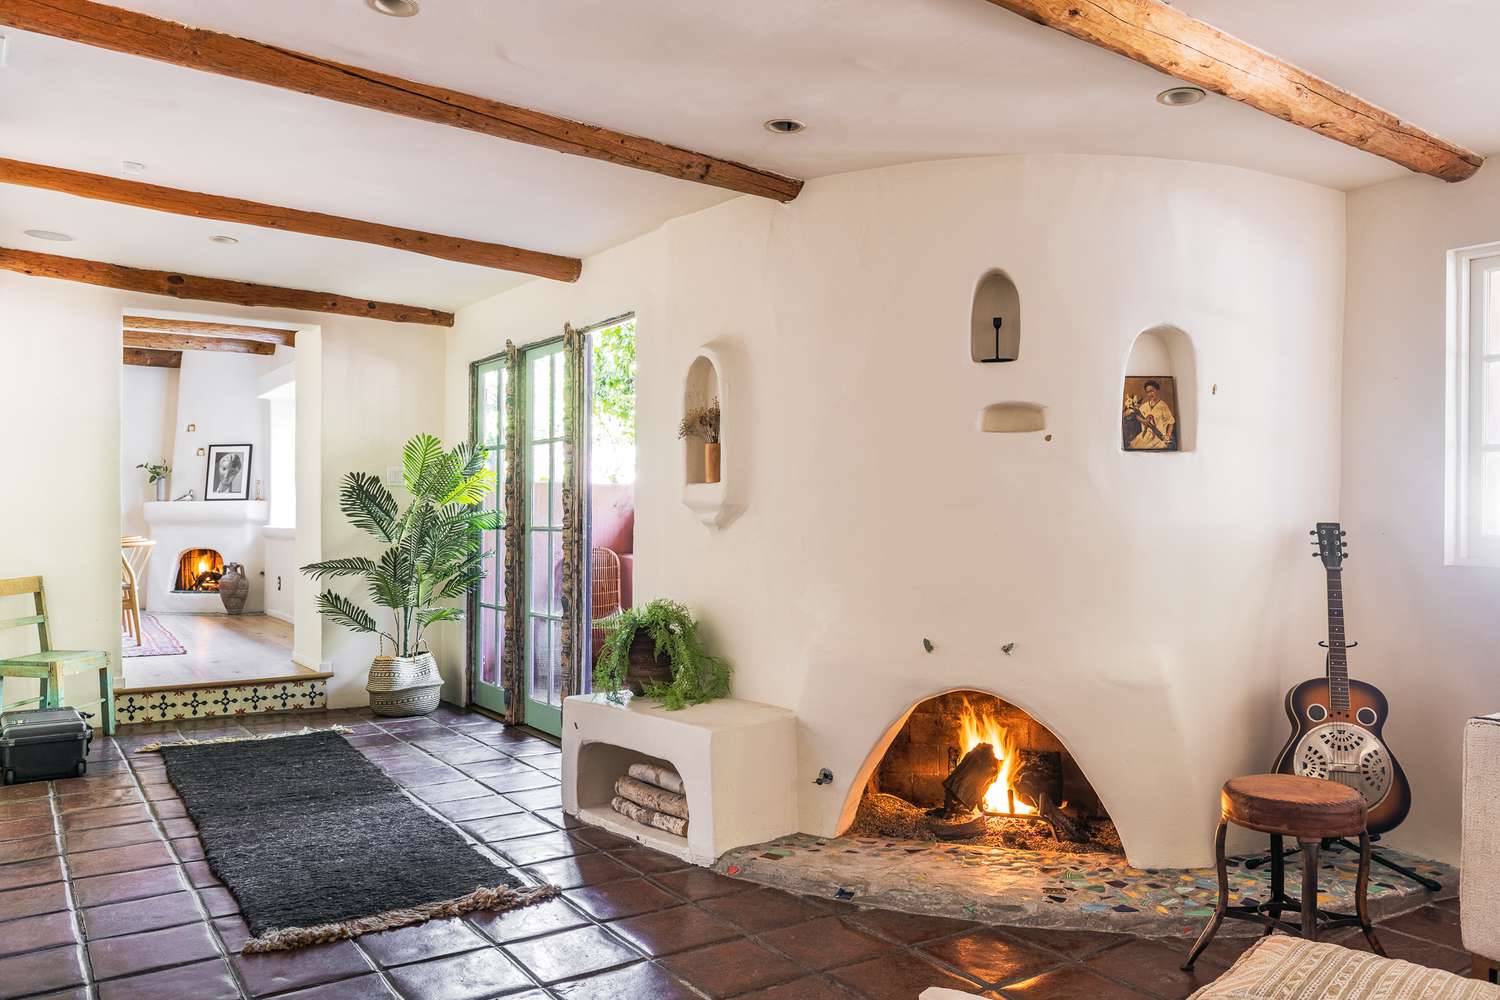 Sala de estar de casa em estilo espanhol com lareira e vigas de madeira no teto